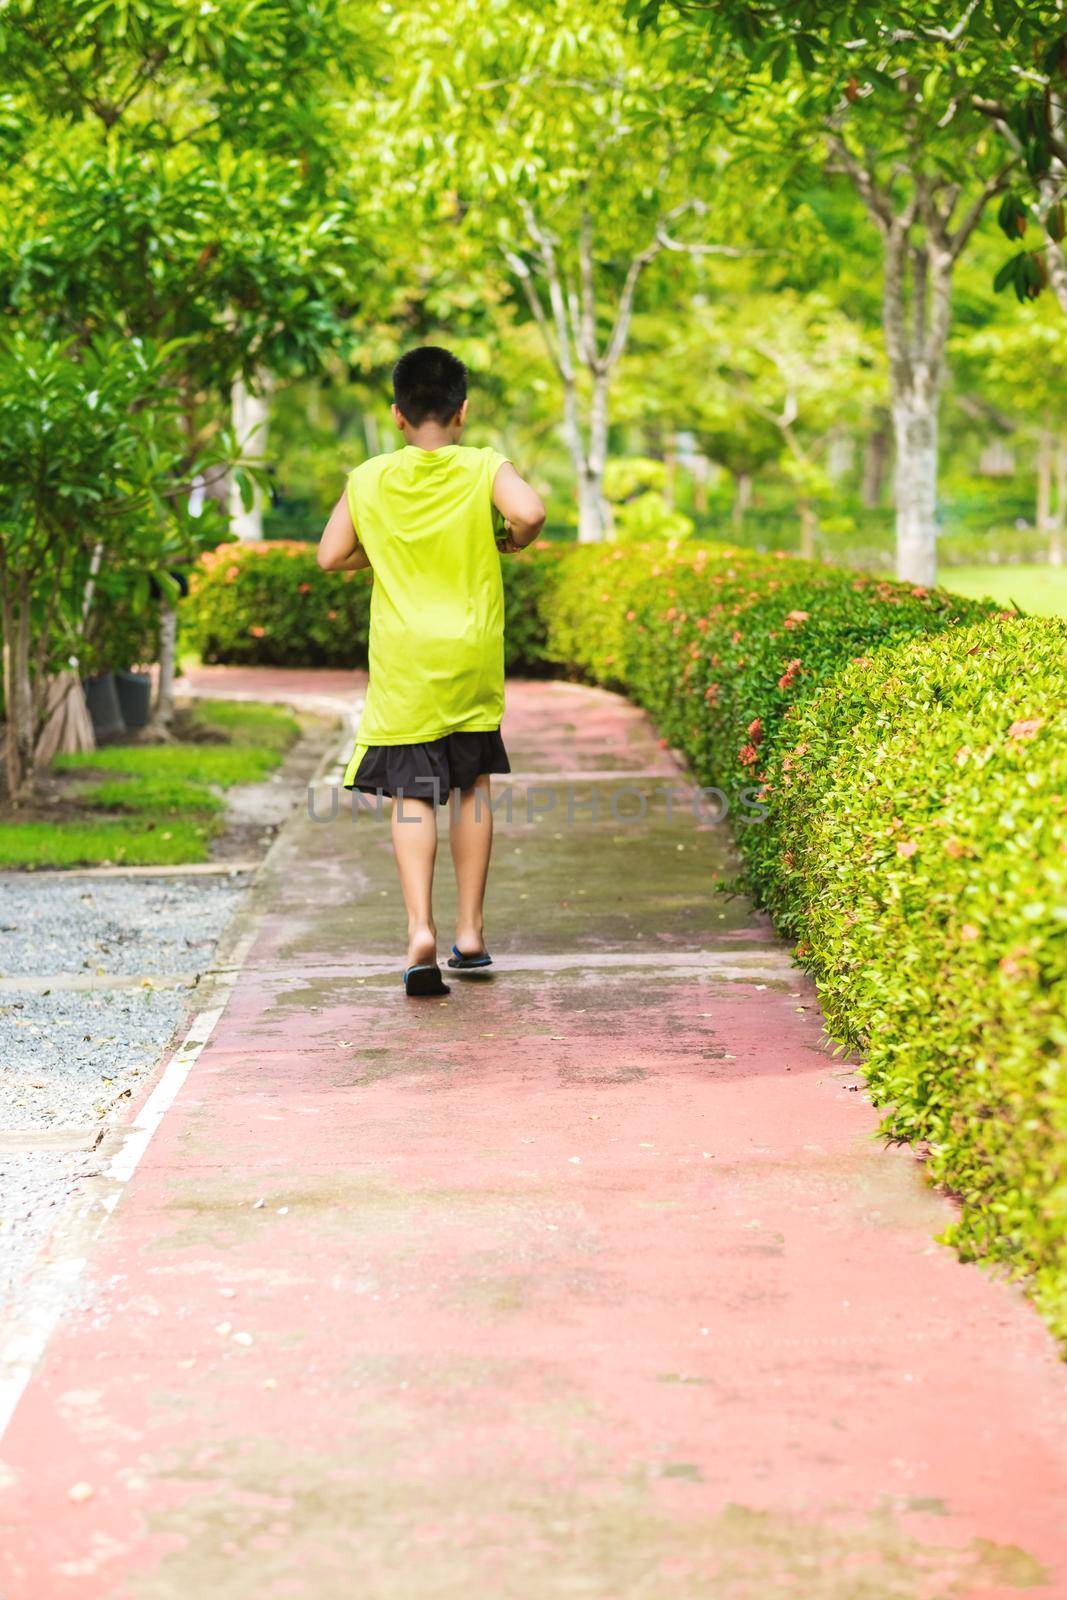 Rare view of young asian boy run in garden